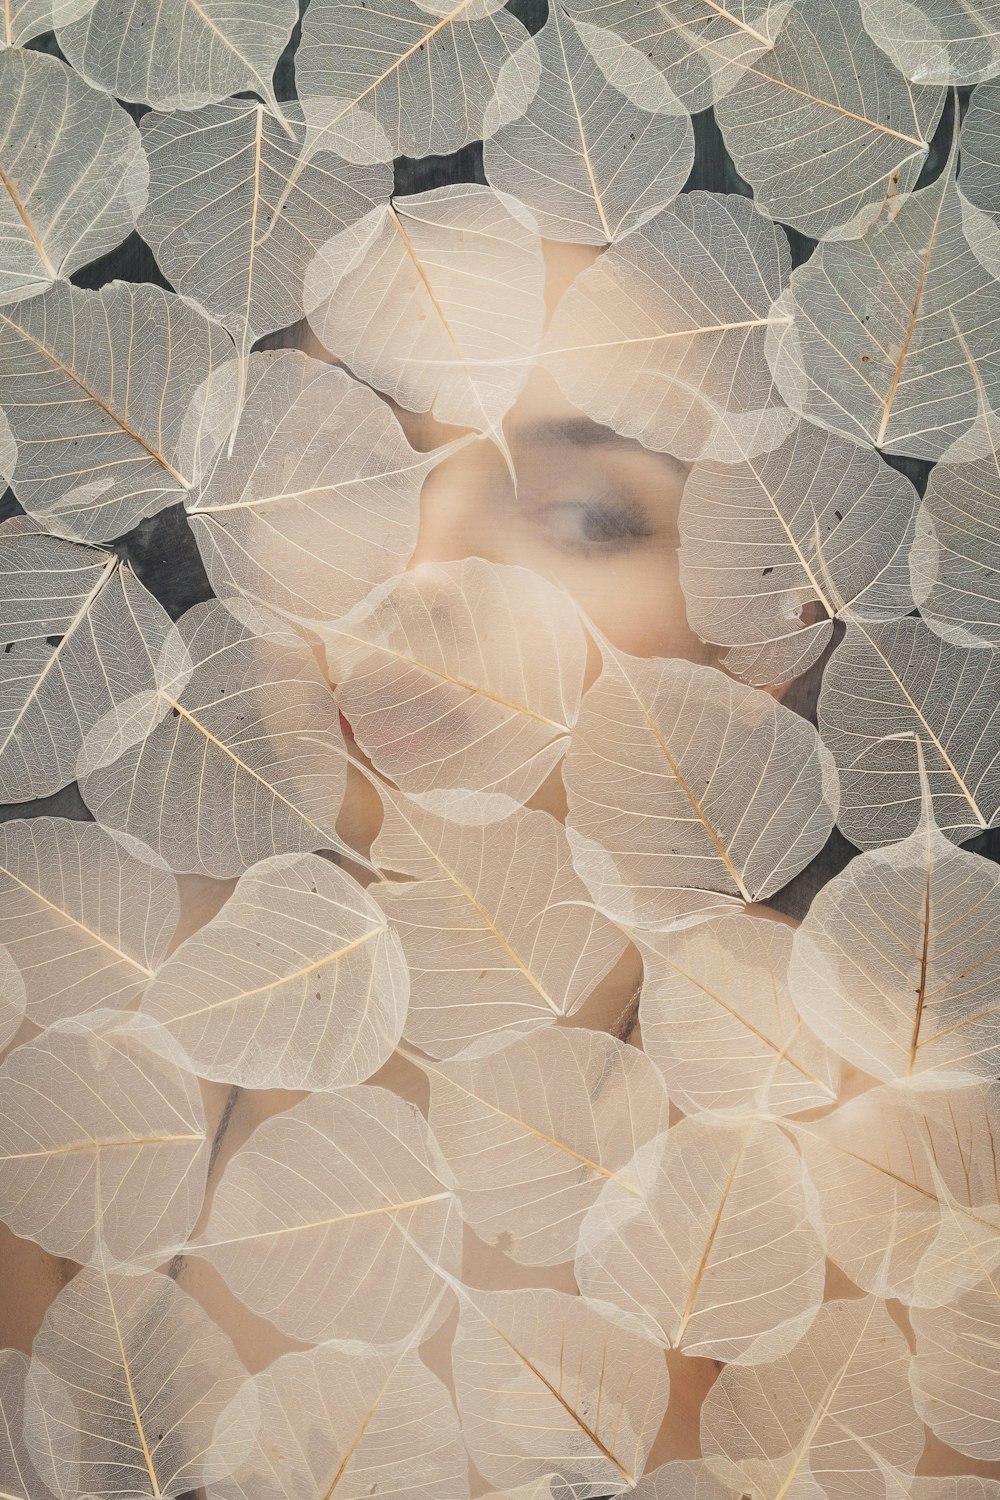 Das Gesicht einer Frau, umgeben von weißen Blättern